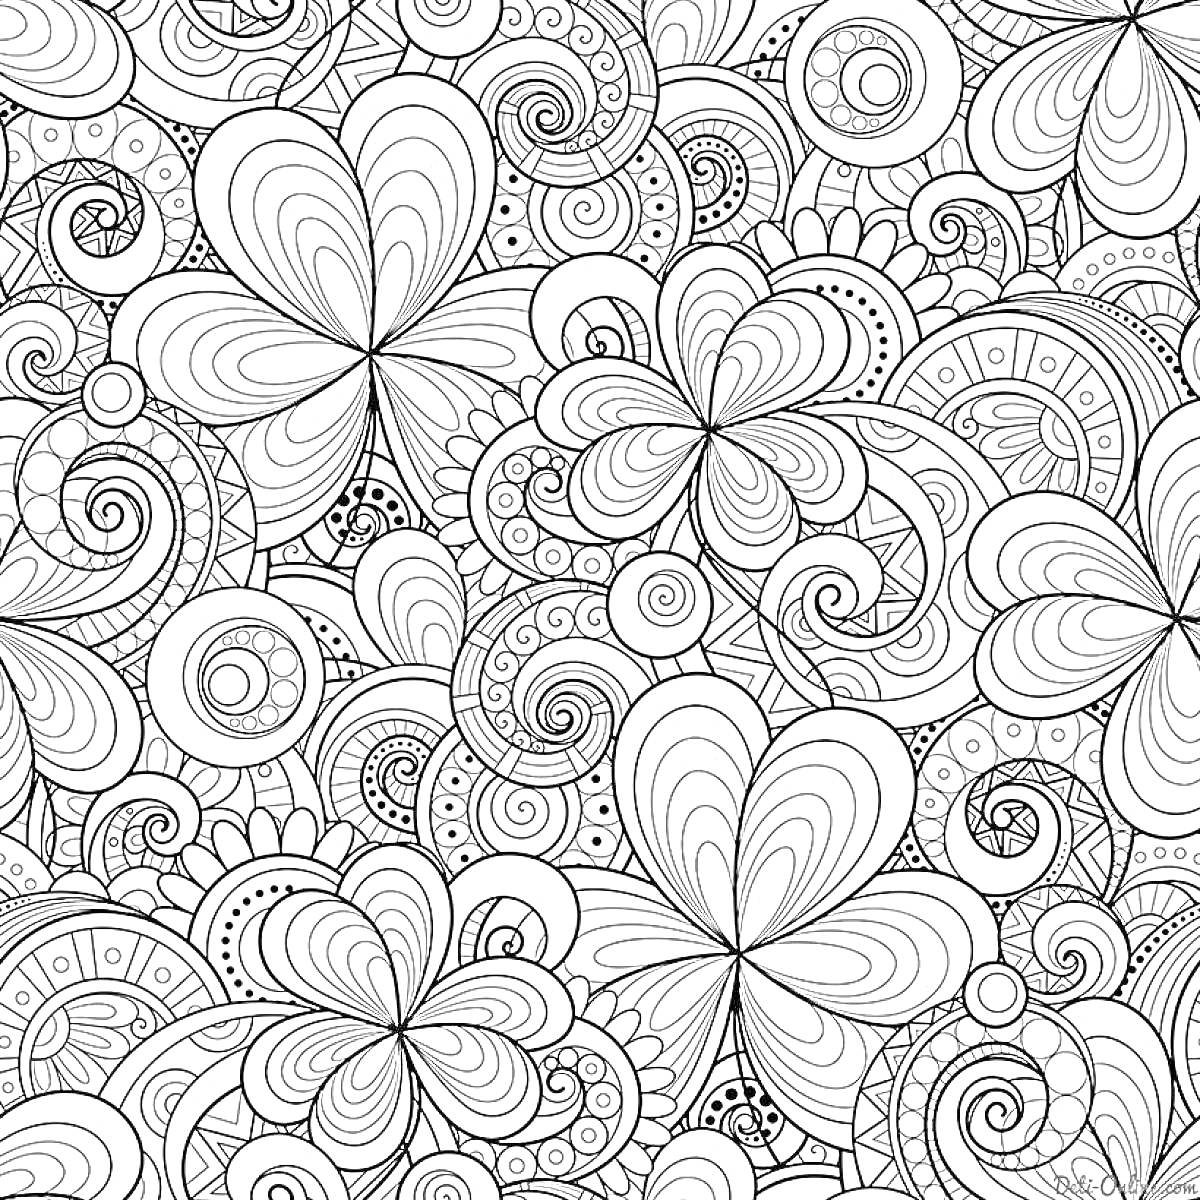 Раскраска Антистресс раскраска - цветы, спирали, узоры